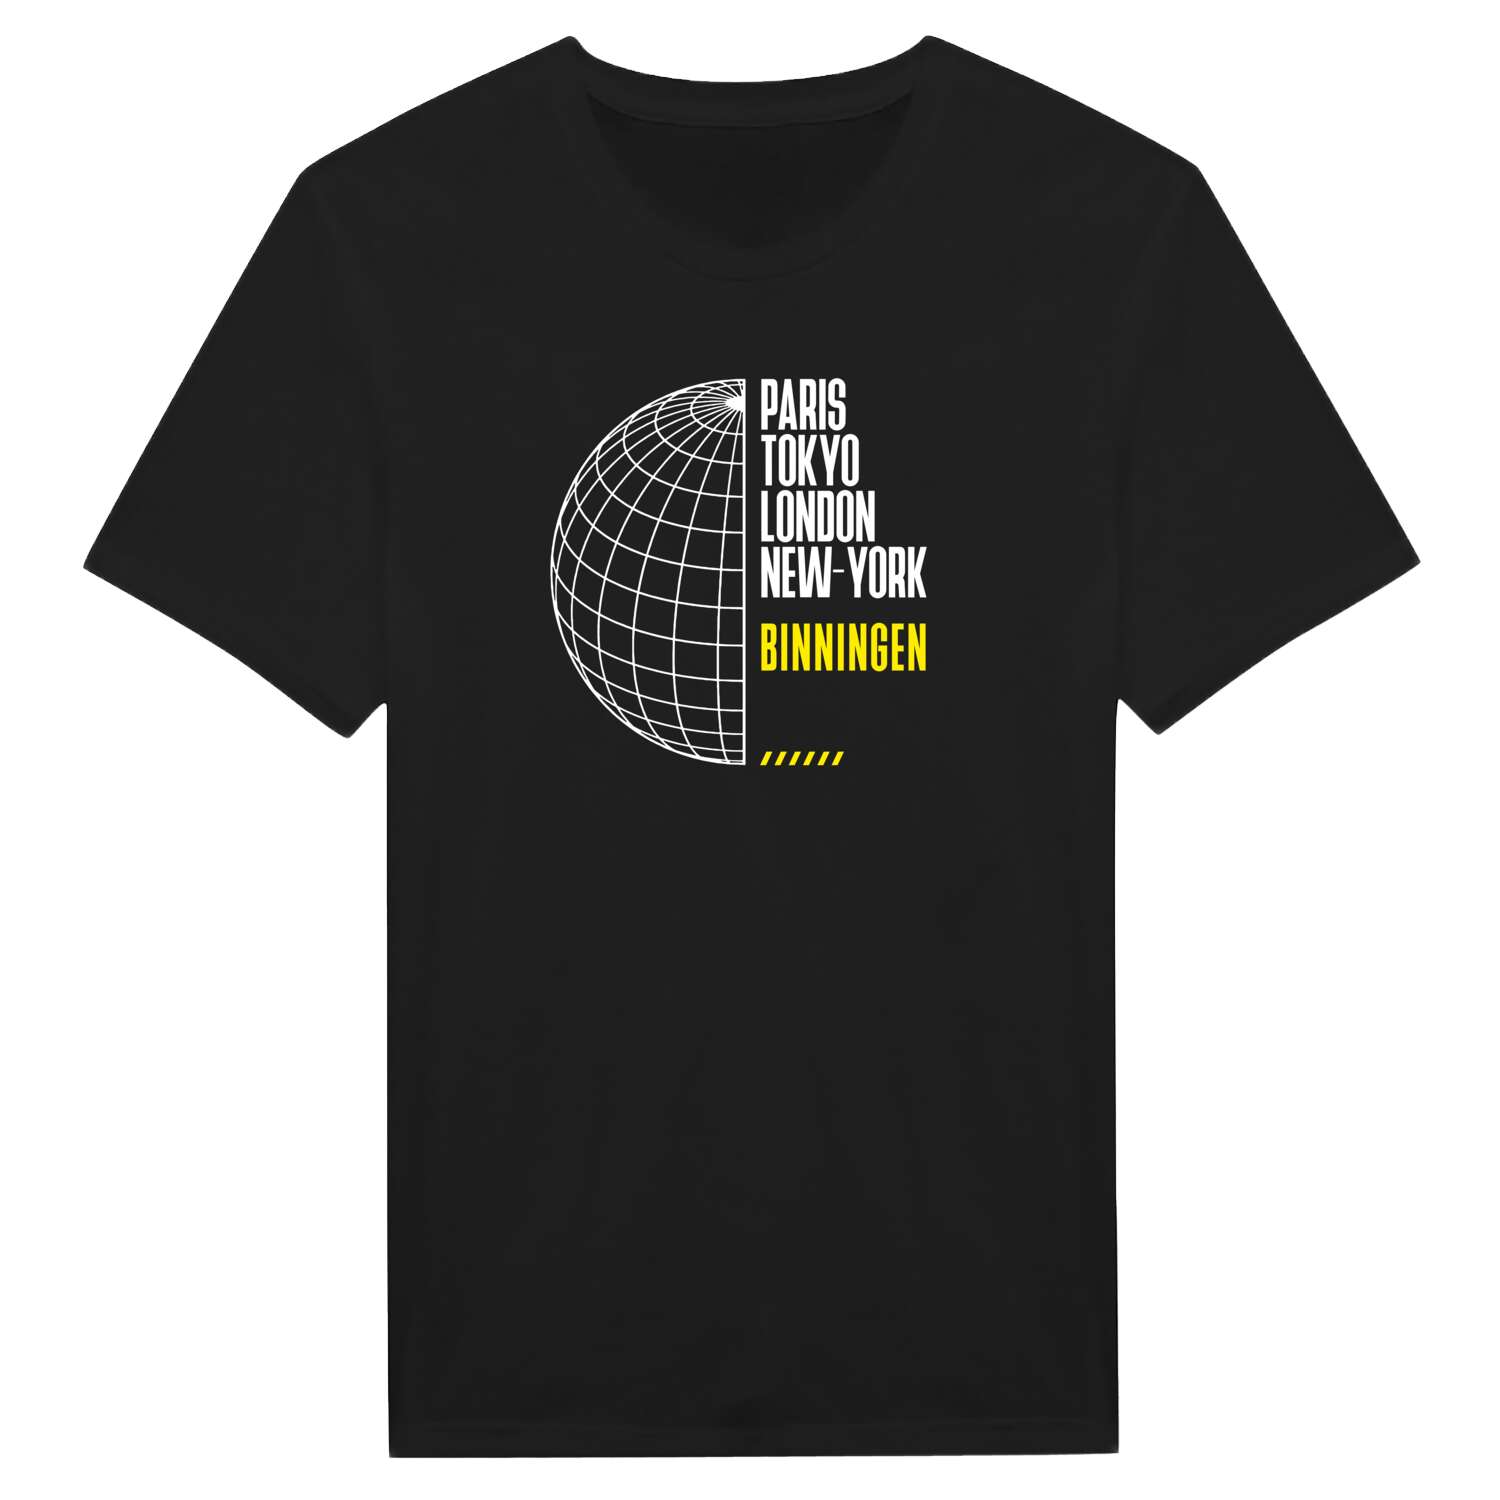 Binningen T-Shirt »Paris Tokyo London«